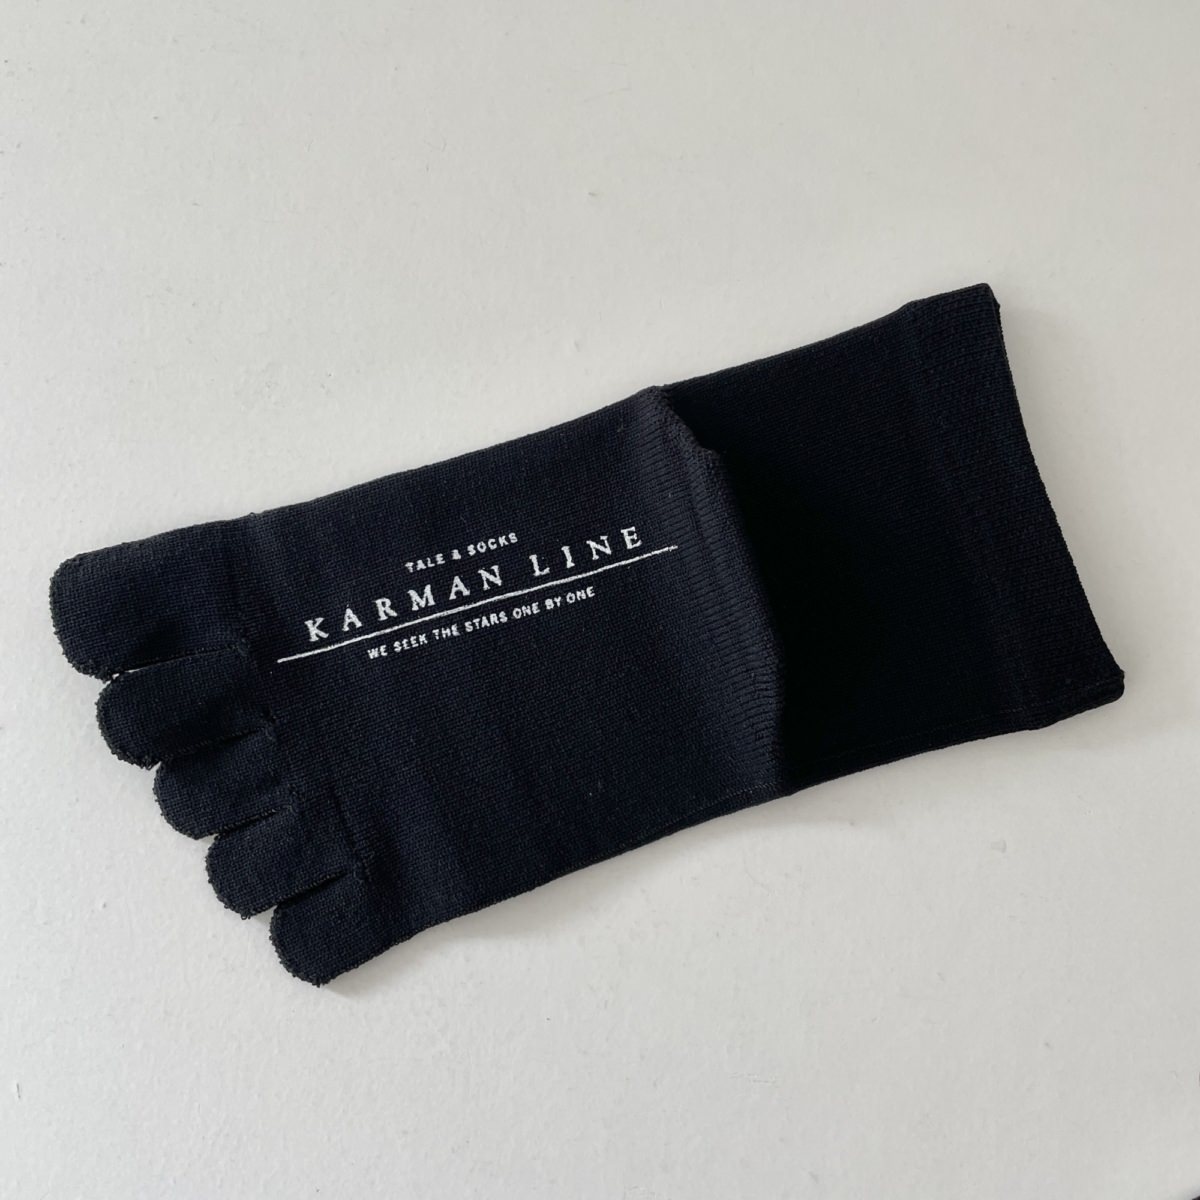 KARMAN LINE URANUS / Socks / Black / 23-25cm